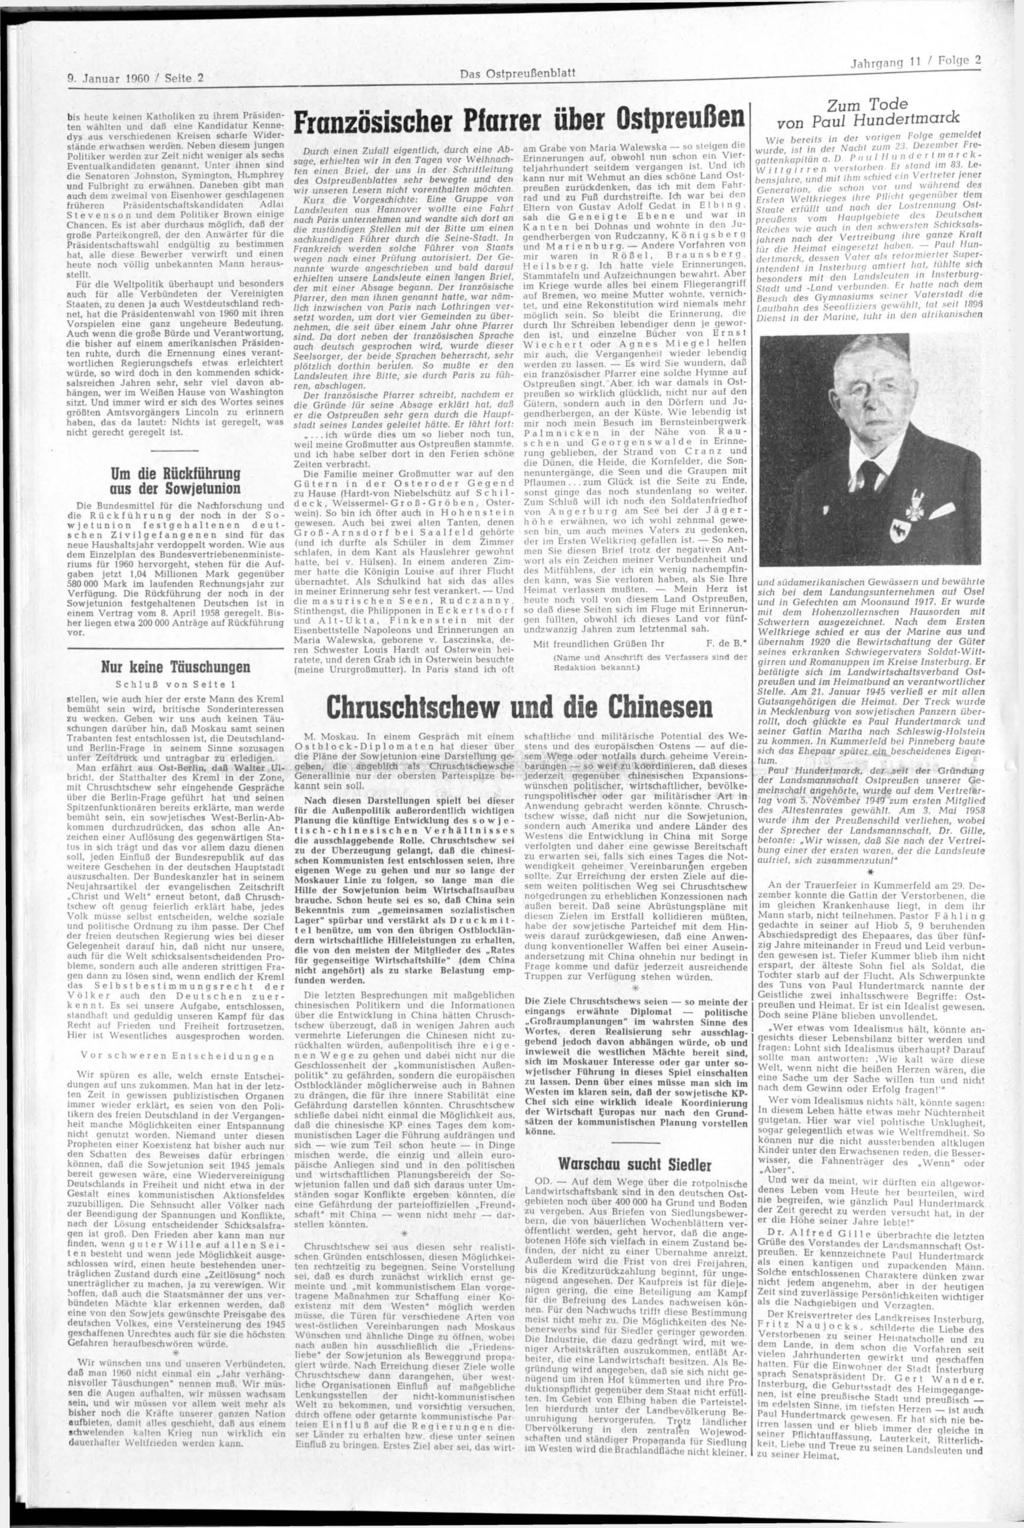 9. Januar 1960 / Seite 2 bis heute keinen Katholiken zu ihrem Präsidenten wählten und daß eine Kandidatur Kennedys aus verschiedenen Kreisen scharfe Widerstände erwachsen werden.